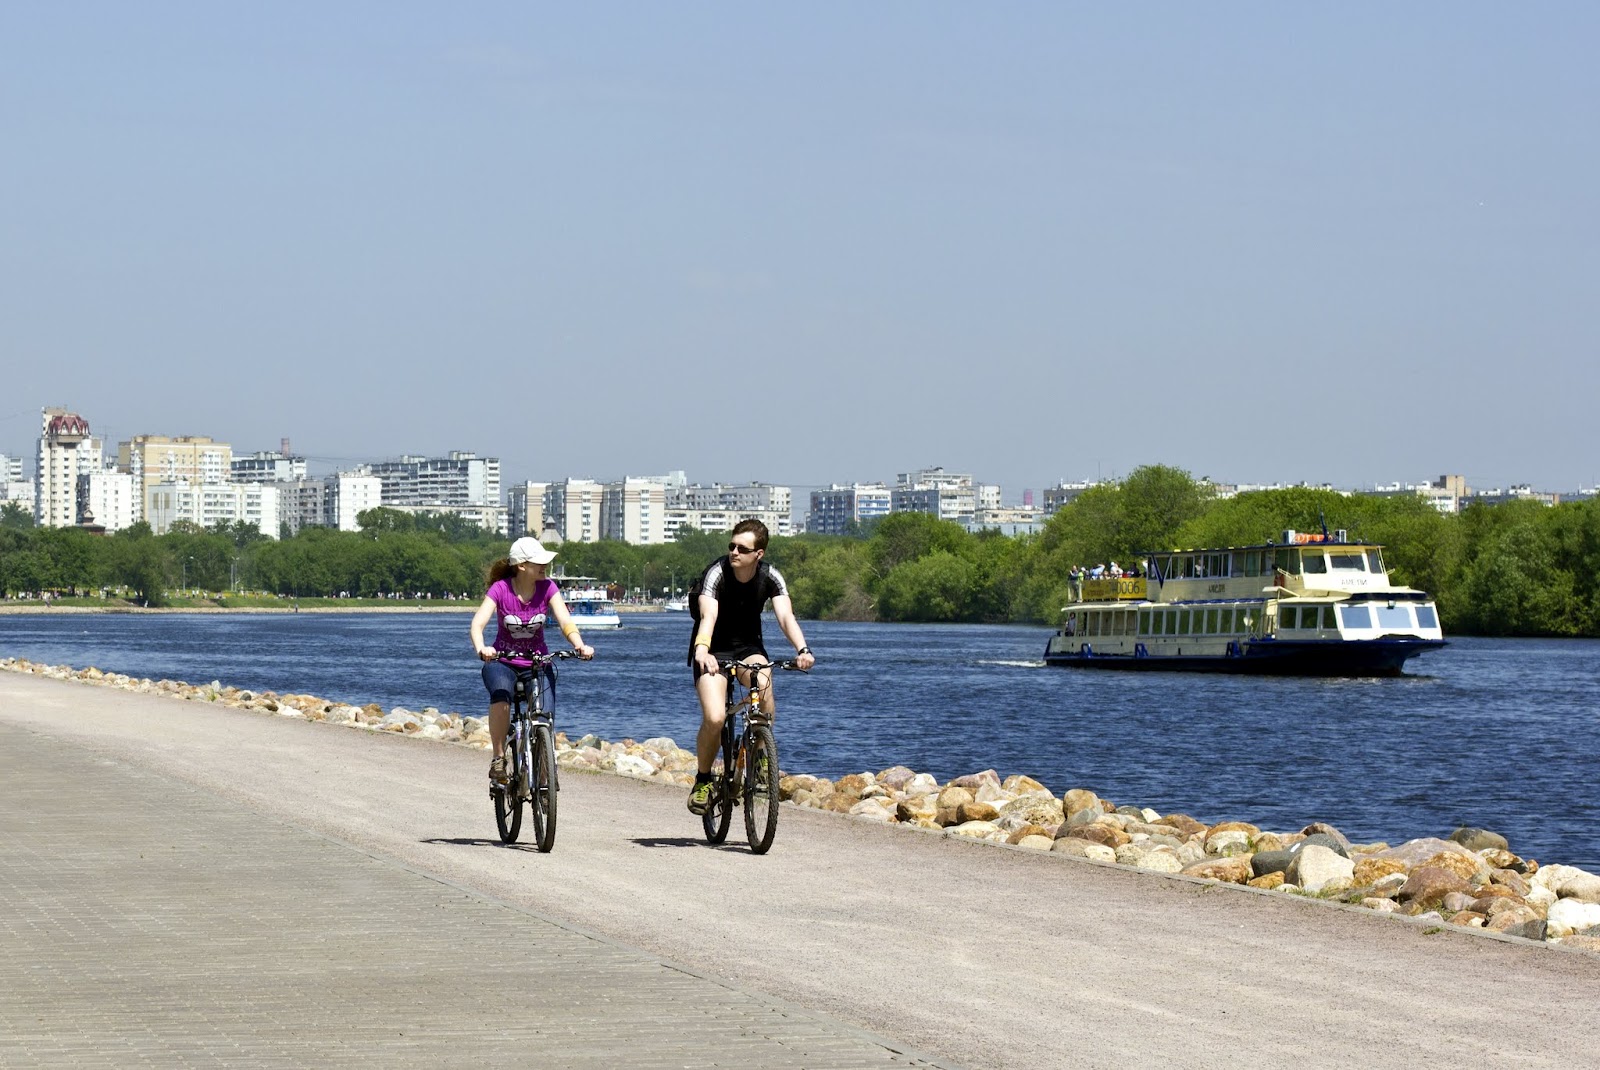 2012.10.18 - Велосипедные маршруты Москвы - Состояние на 2012 год и планы развития